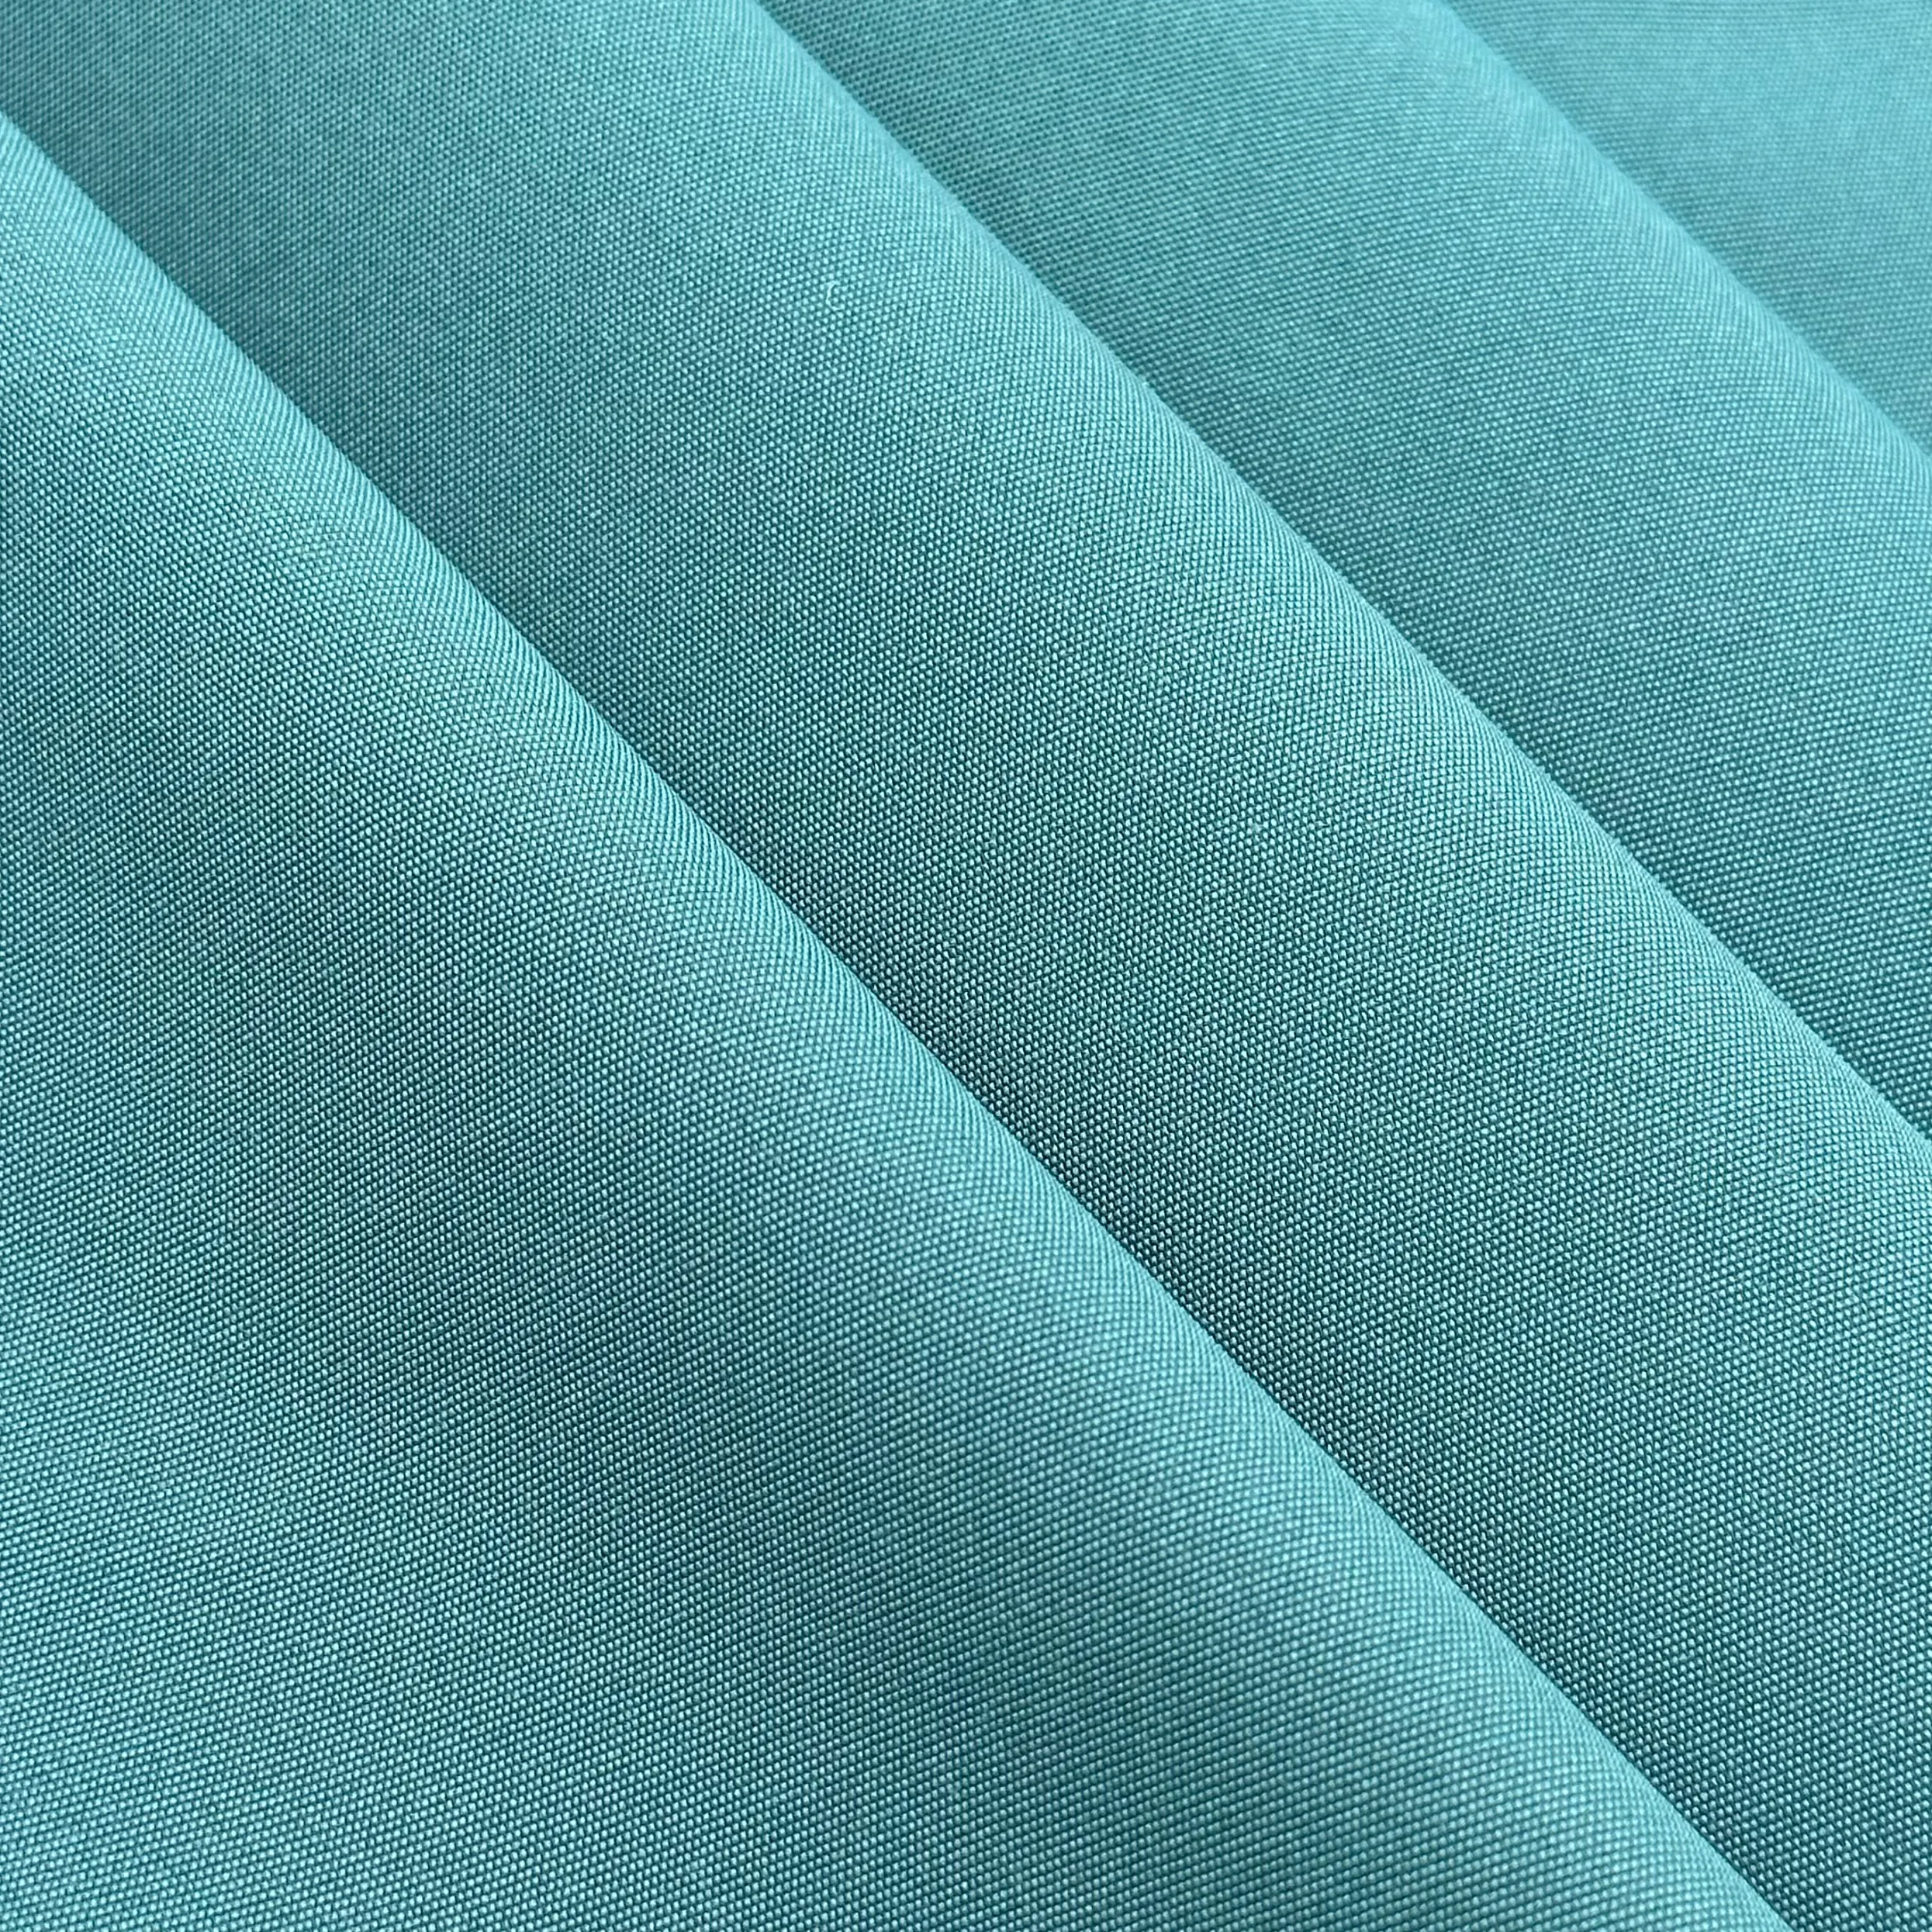 Personalizado 150 T400 doble trama elástica de tejido liso Oxford chaqueta cortavientos tela de poliéster